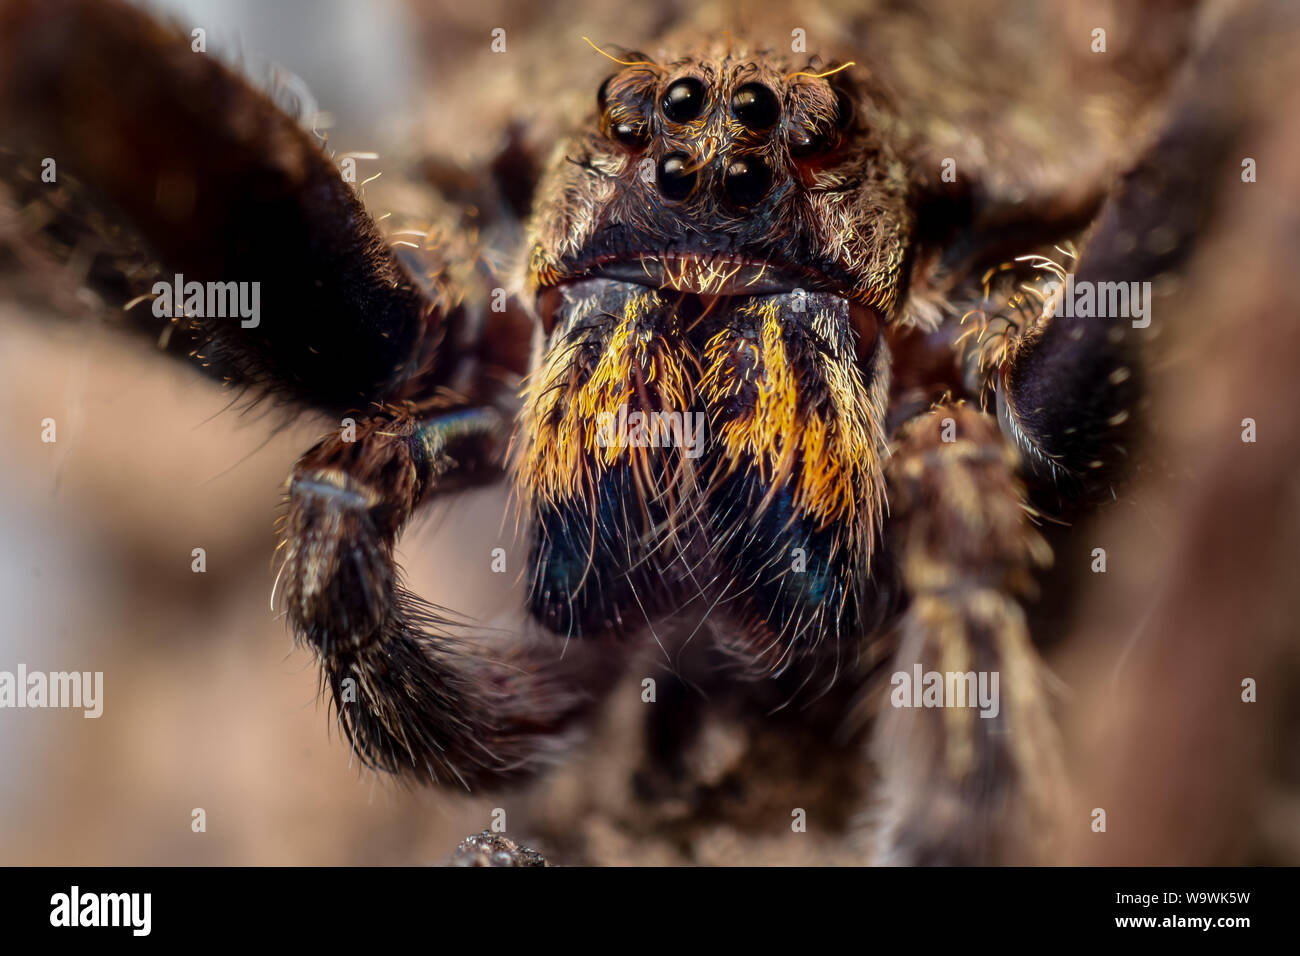 Ritratto frontale di un vagare Enoploctenus spidre dalla foresta atlantica del Brasile, mostra la faccia di ragno in dettagli Foto Stock